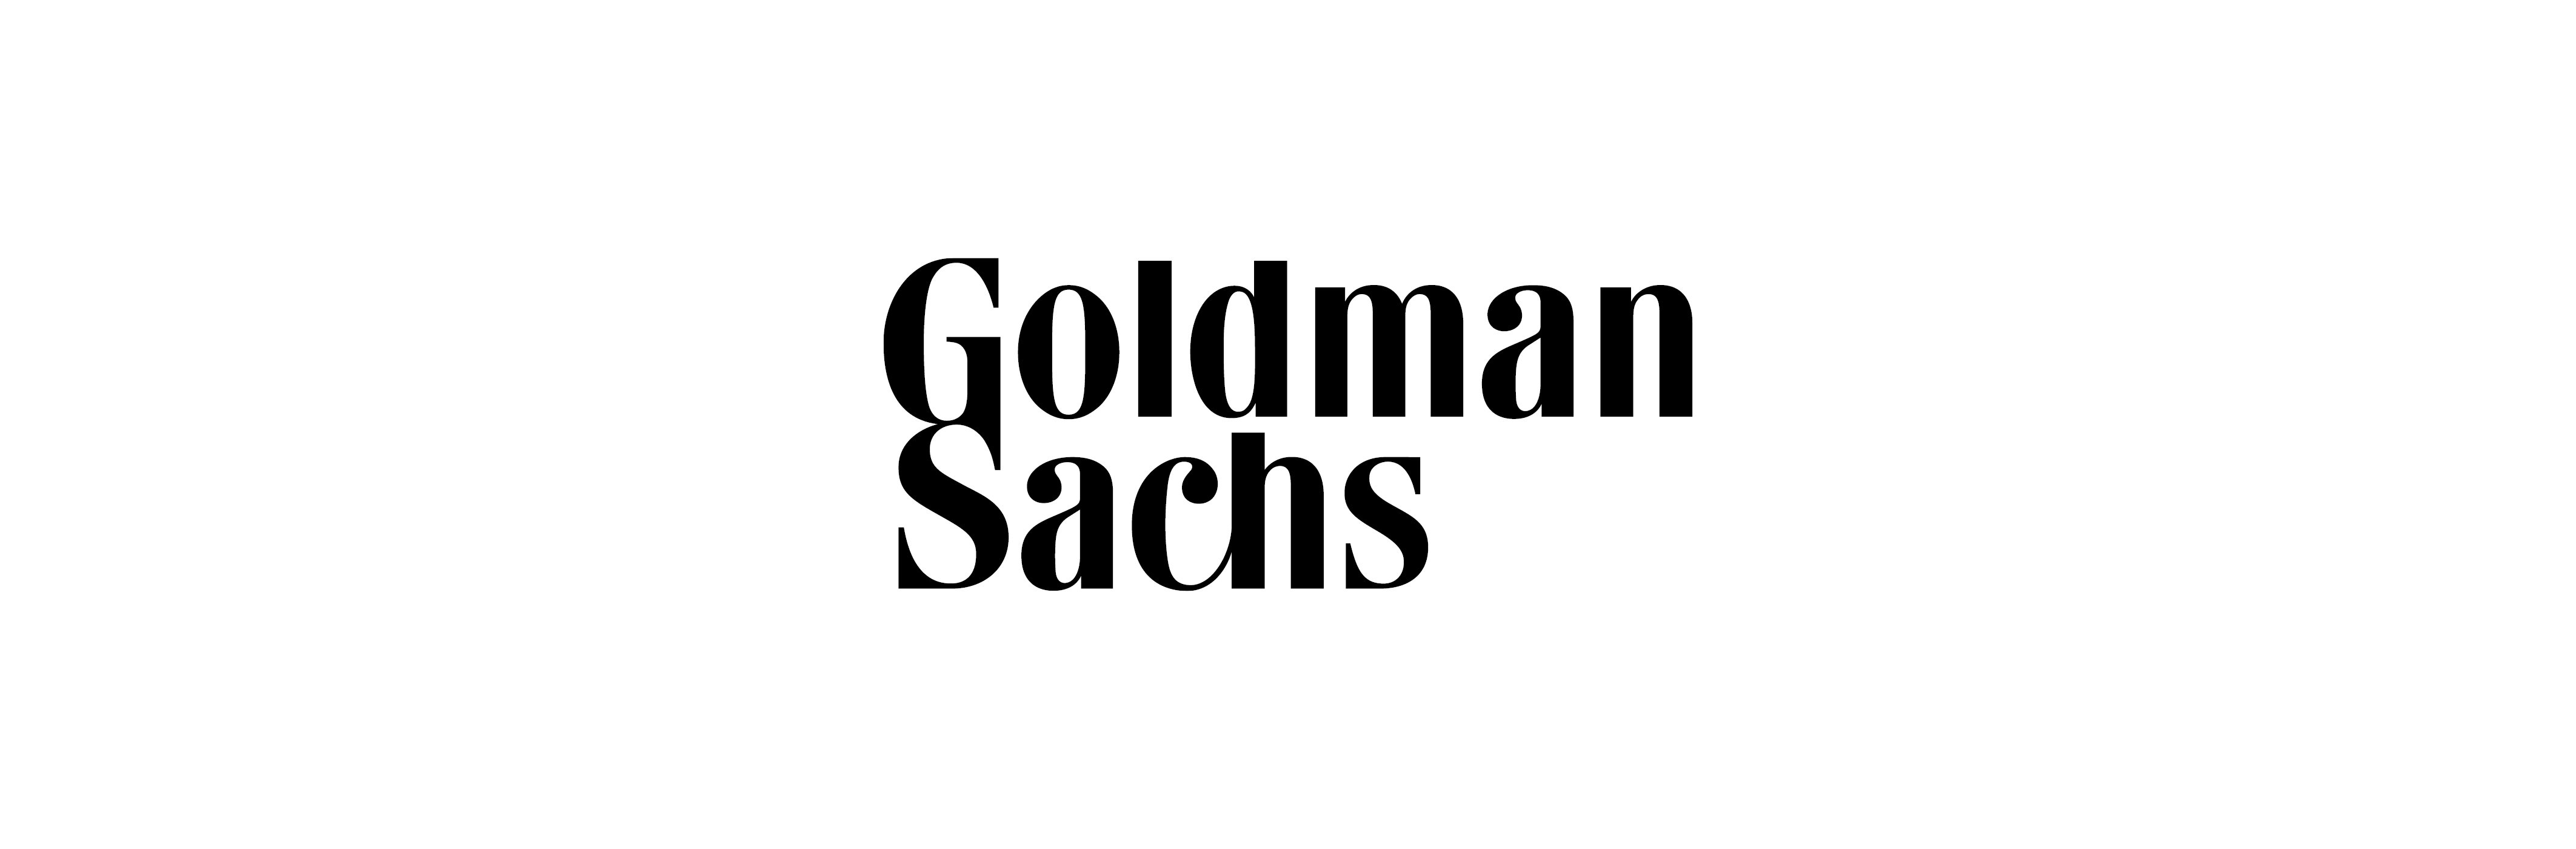 Goldman Sachs Logo - Goldman Sachs Australia